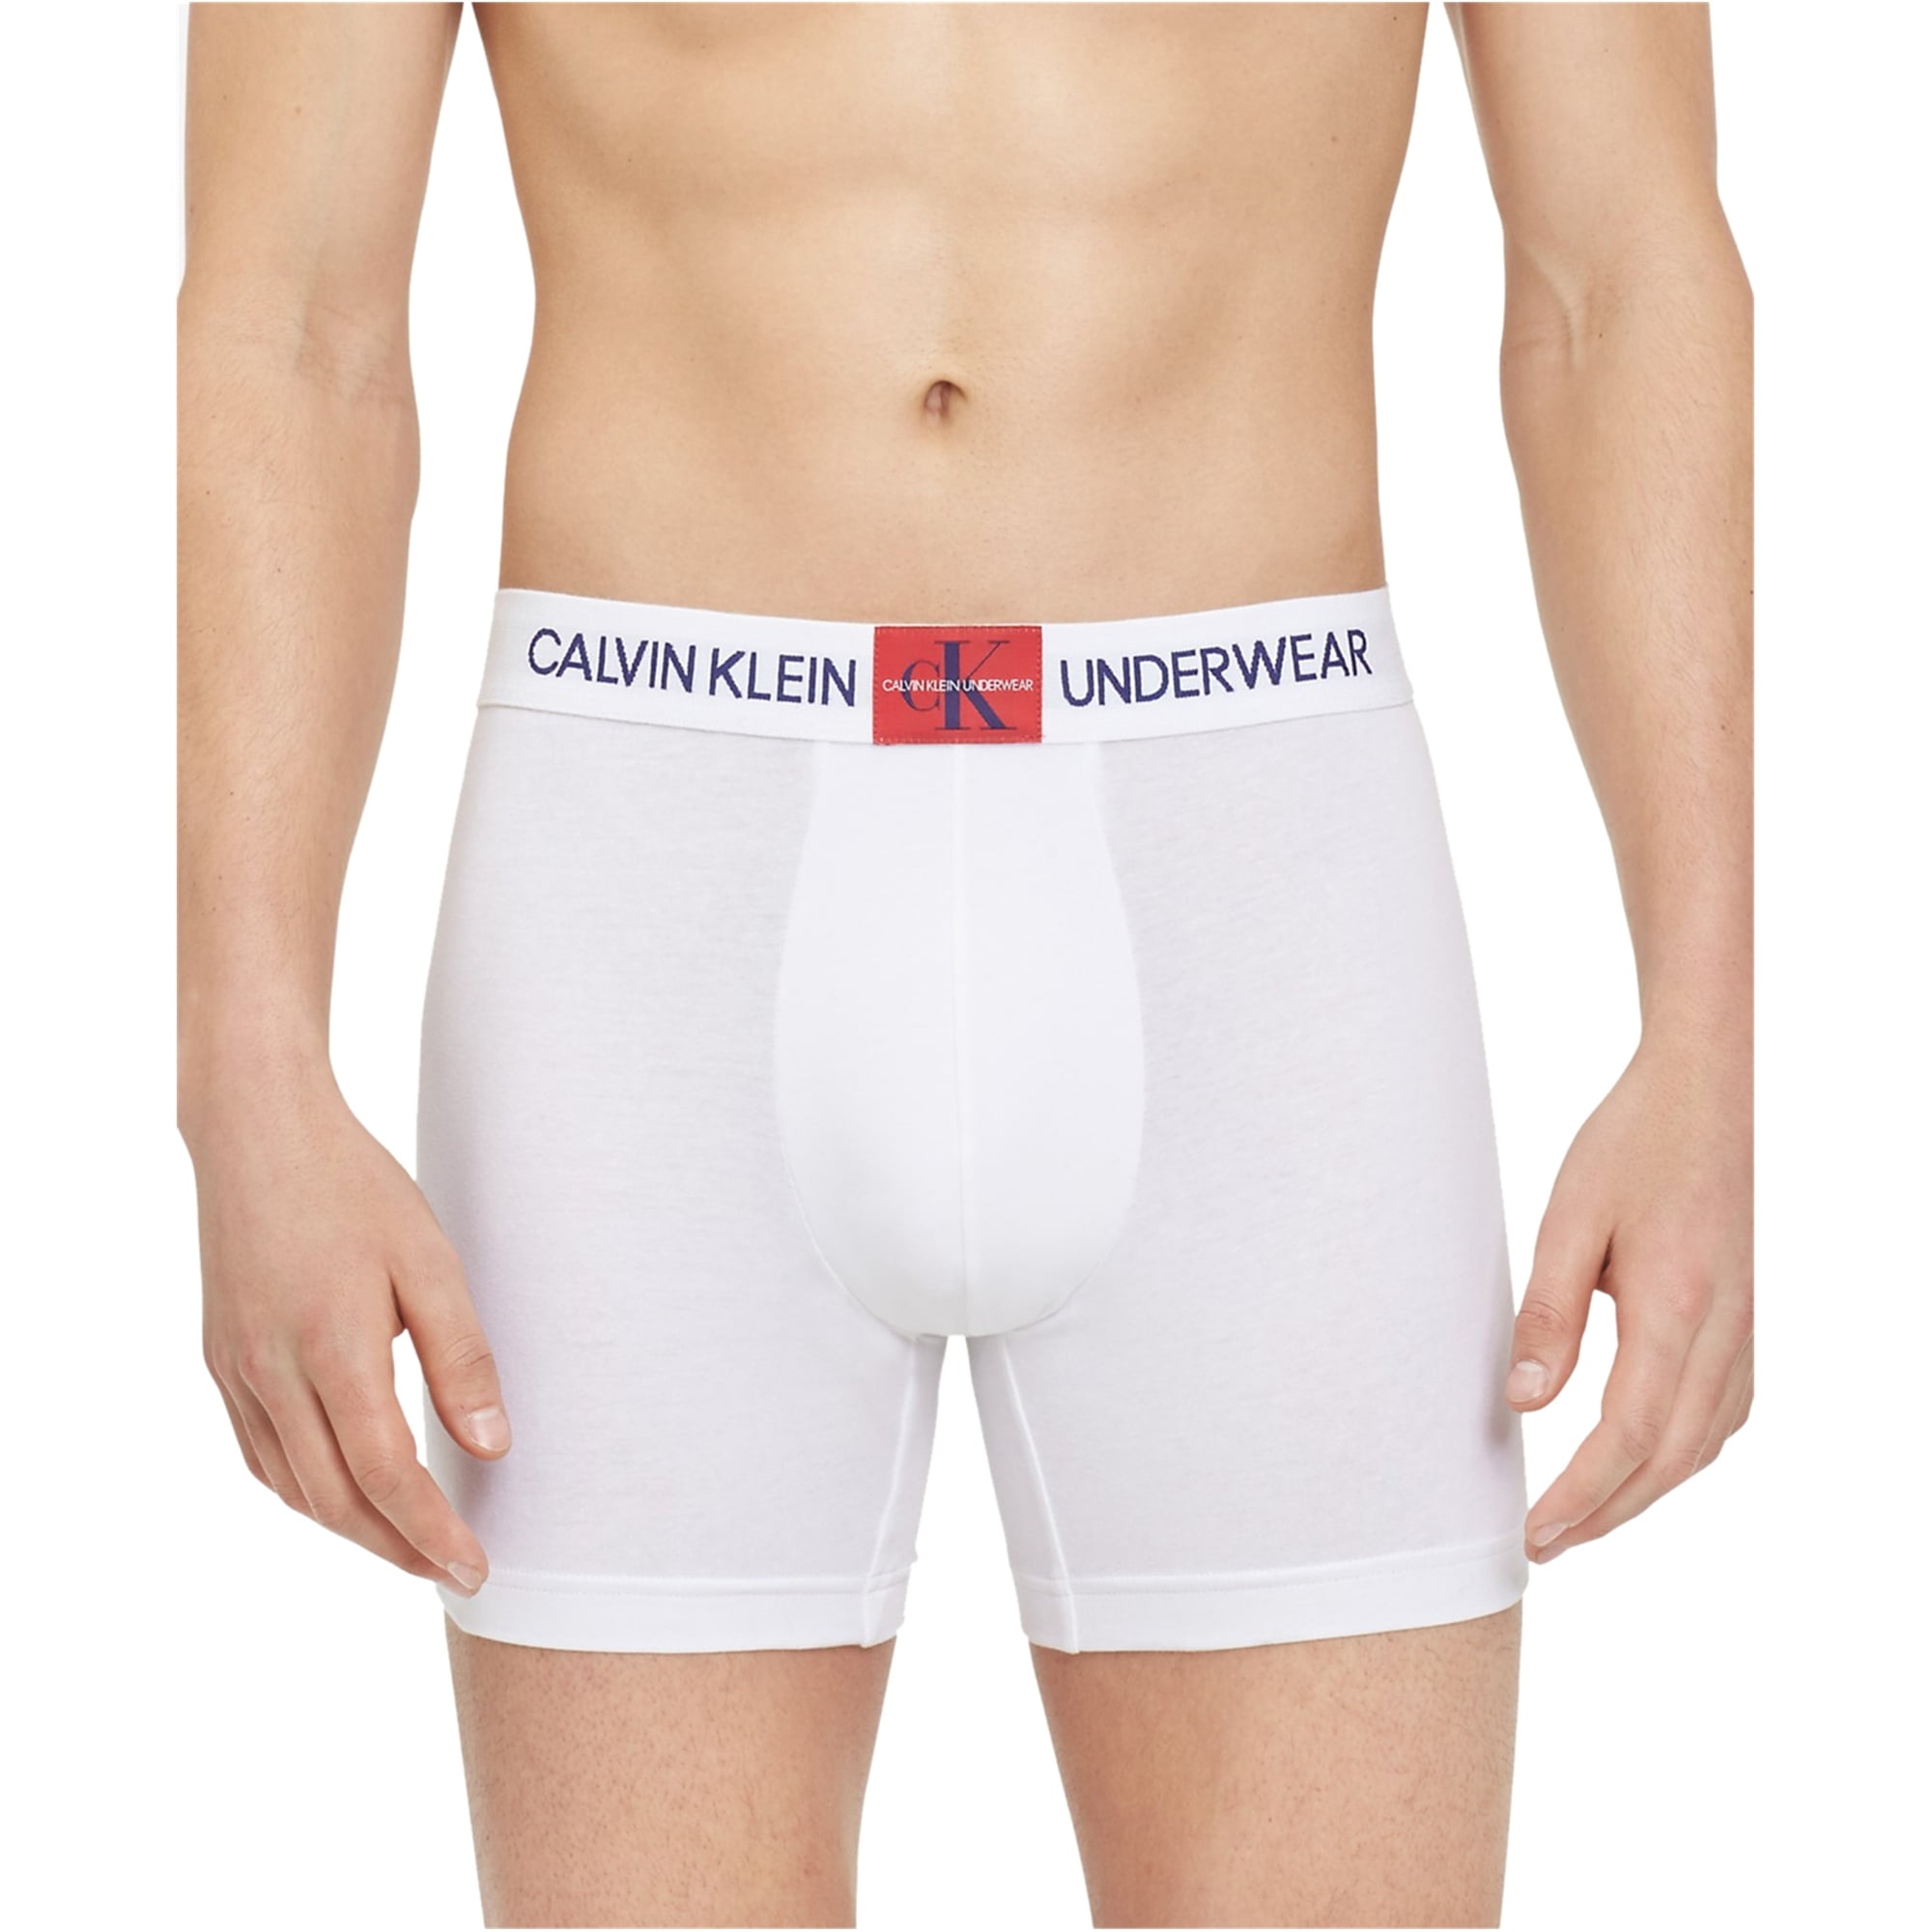 Calvin klein underwear briefs